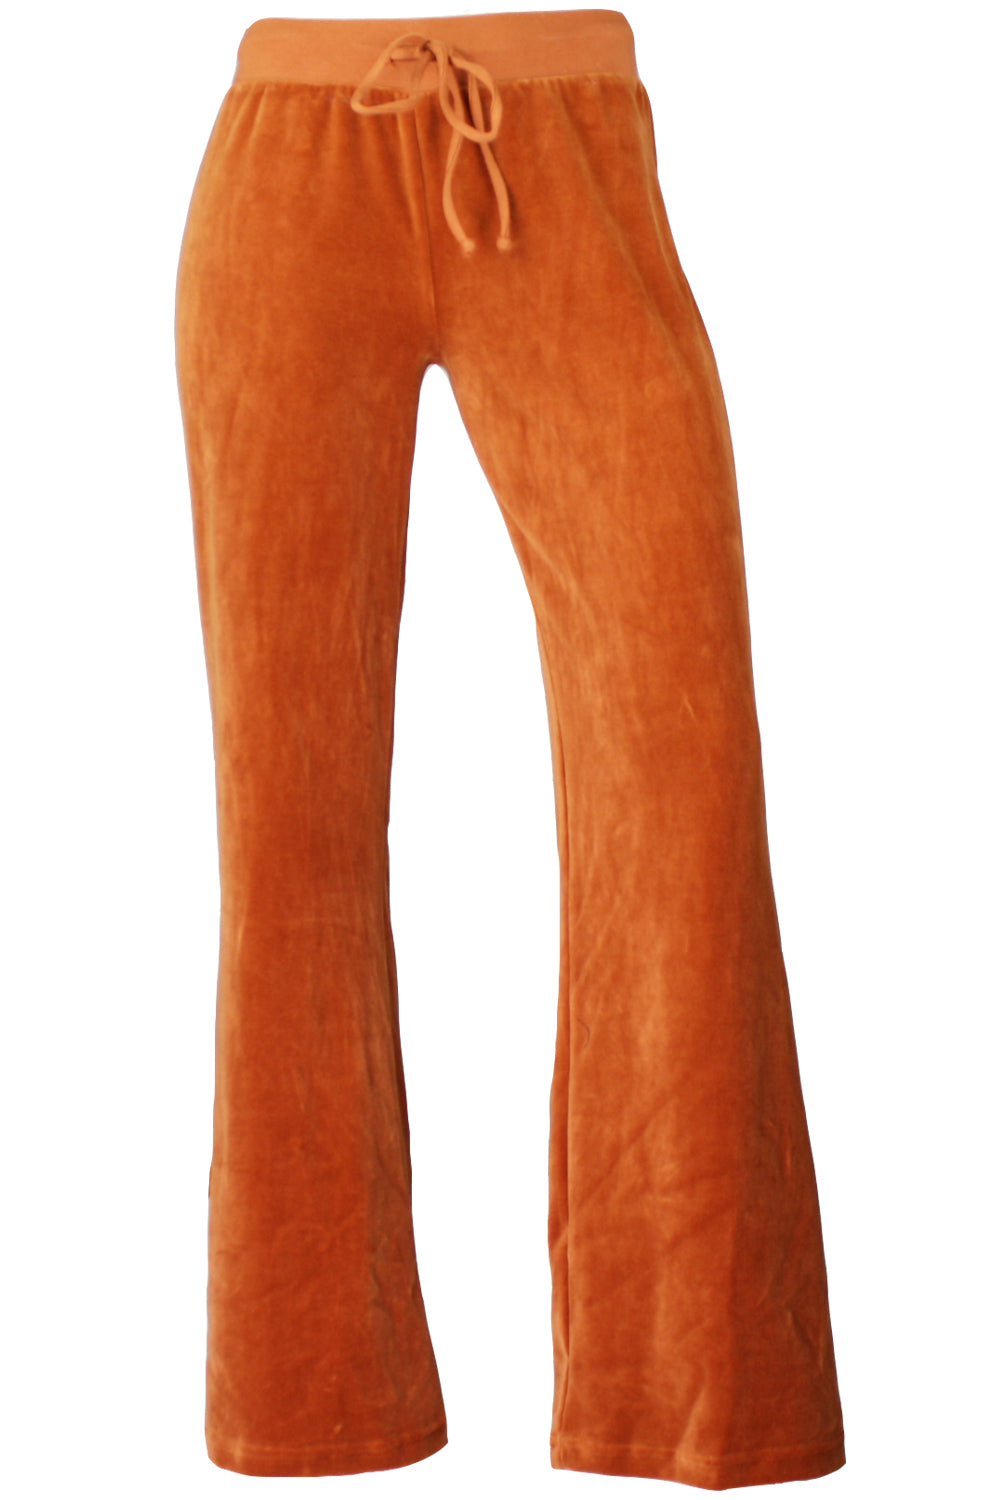 Burnt Orange Velvet Pants - Longhorn Fashions